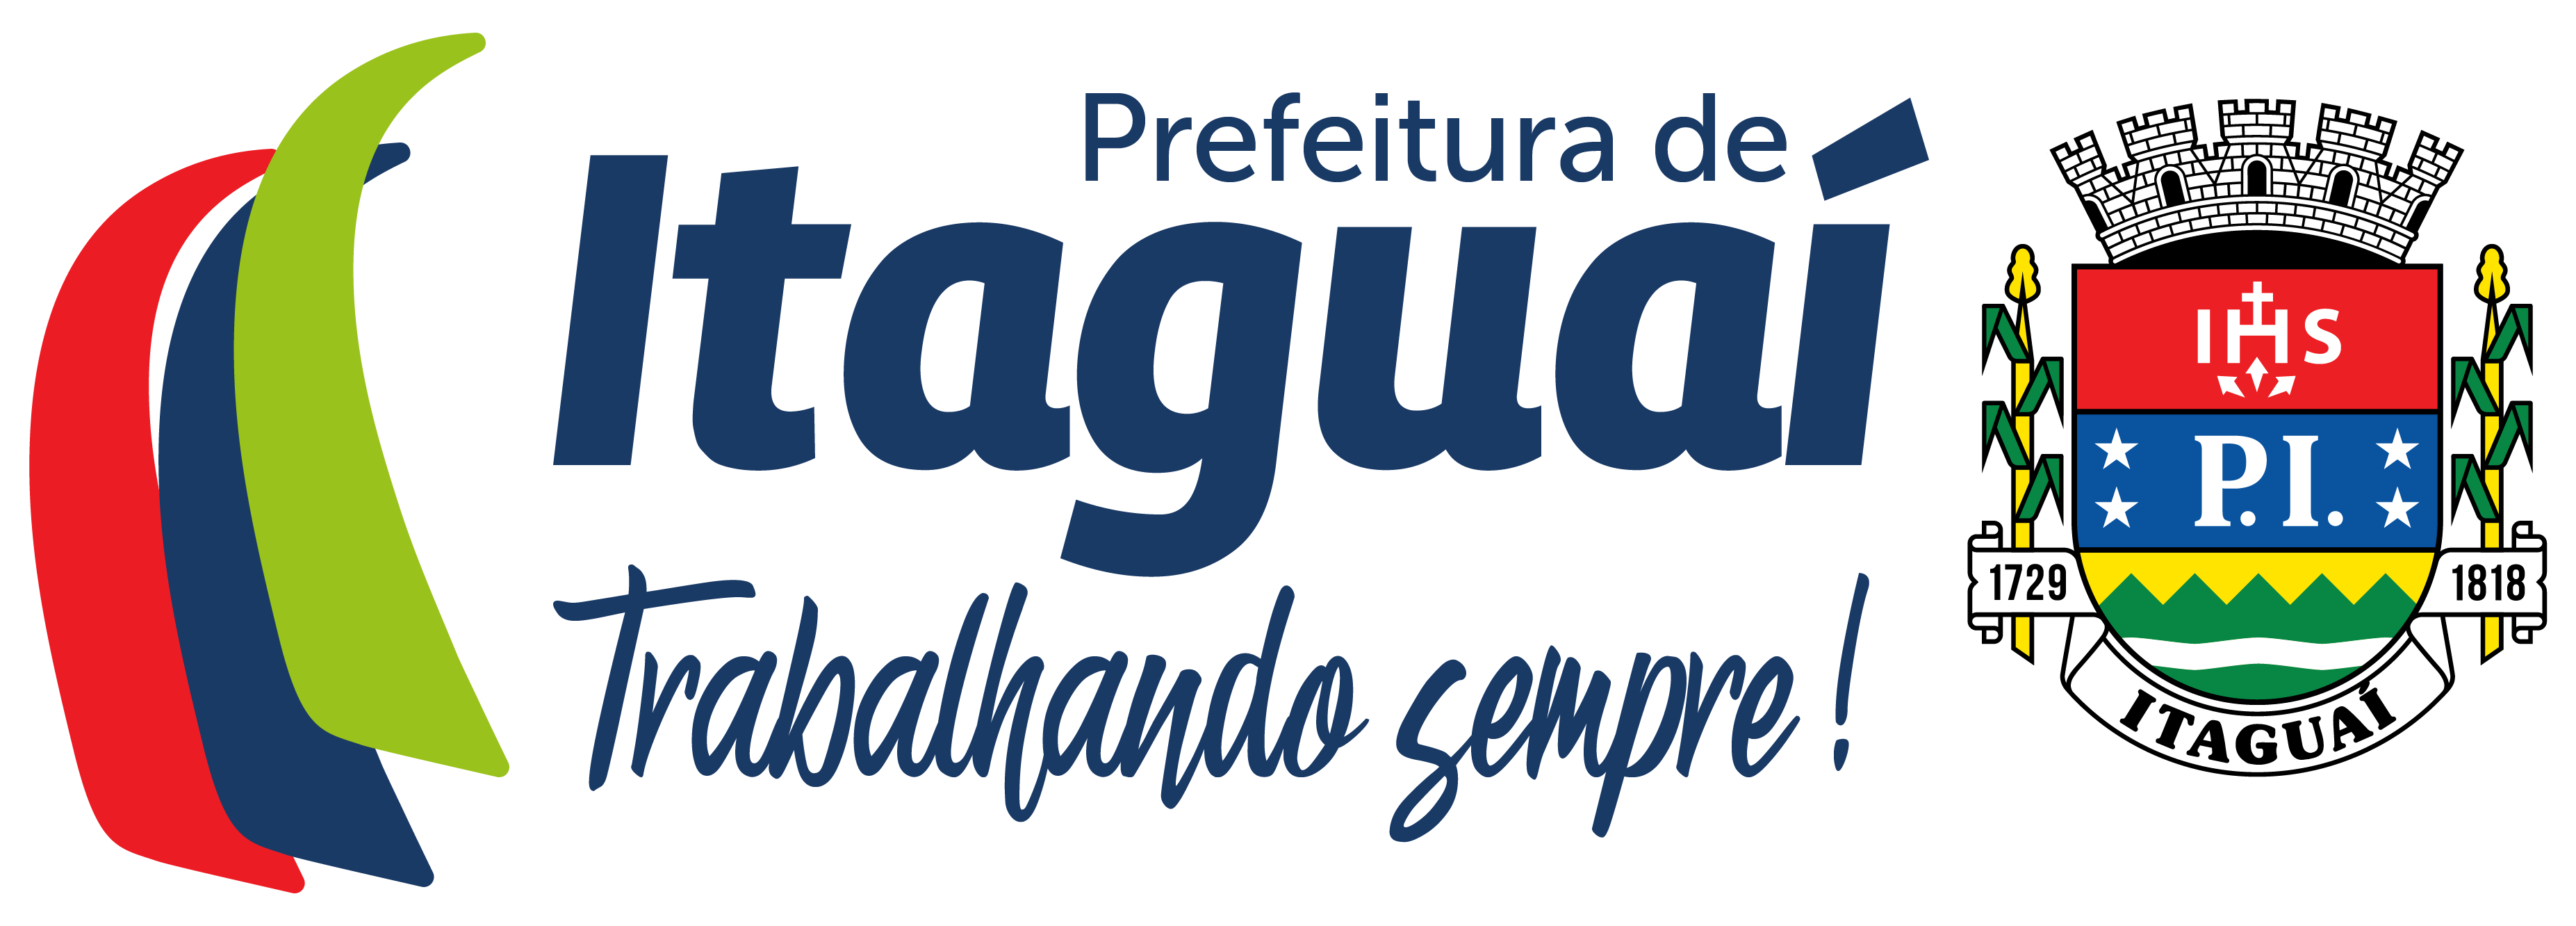 Prefeitura de Itaguaí